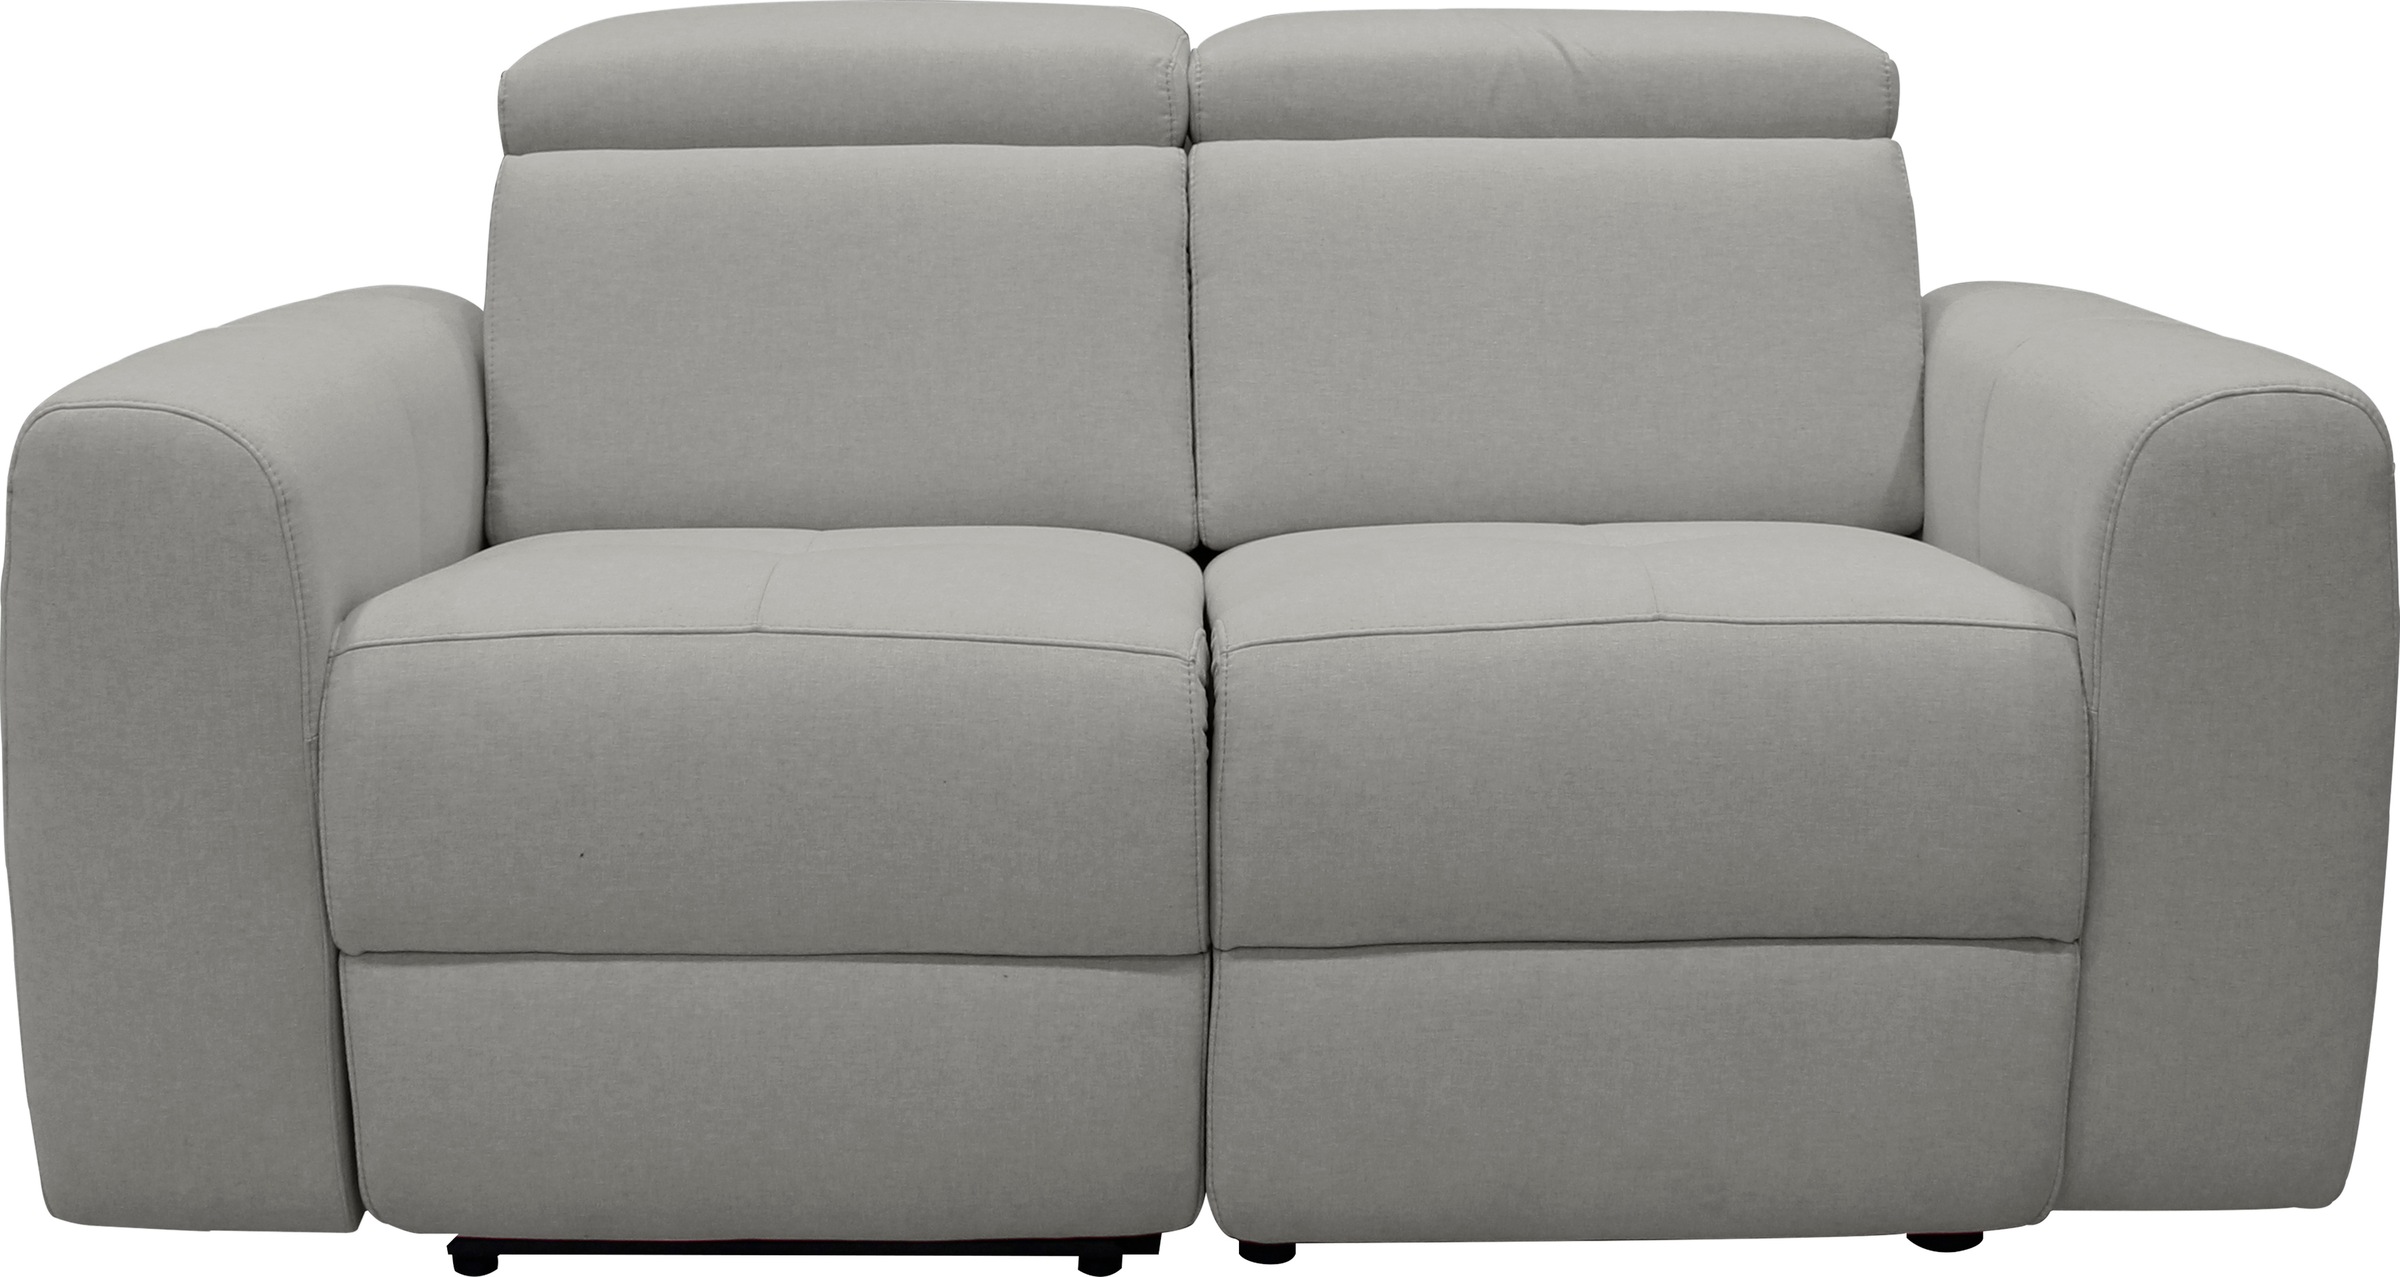 Home affaire 2-Sitzer »Sentrano«, auch mit elektrischer Funktion mit USB-Anschluß, in 4 Bezugsvarianten